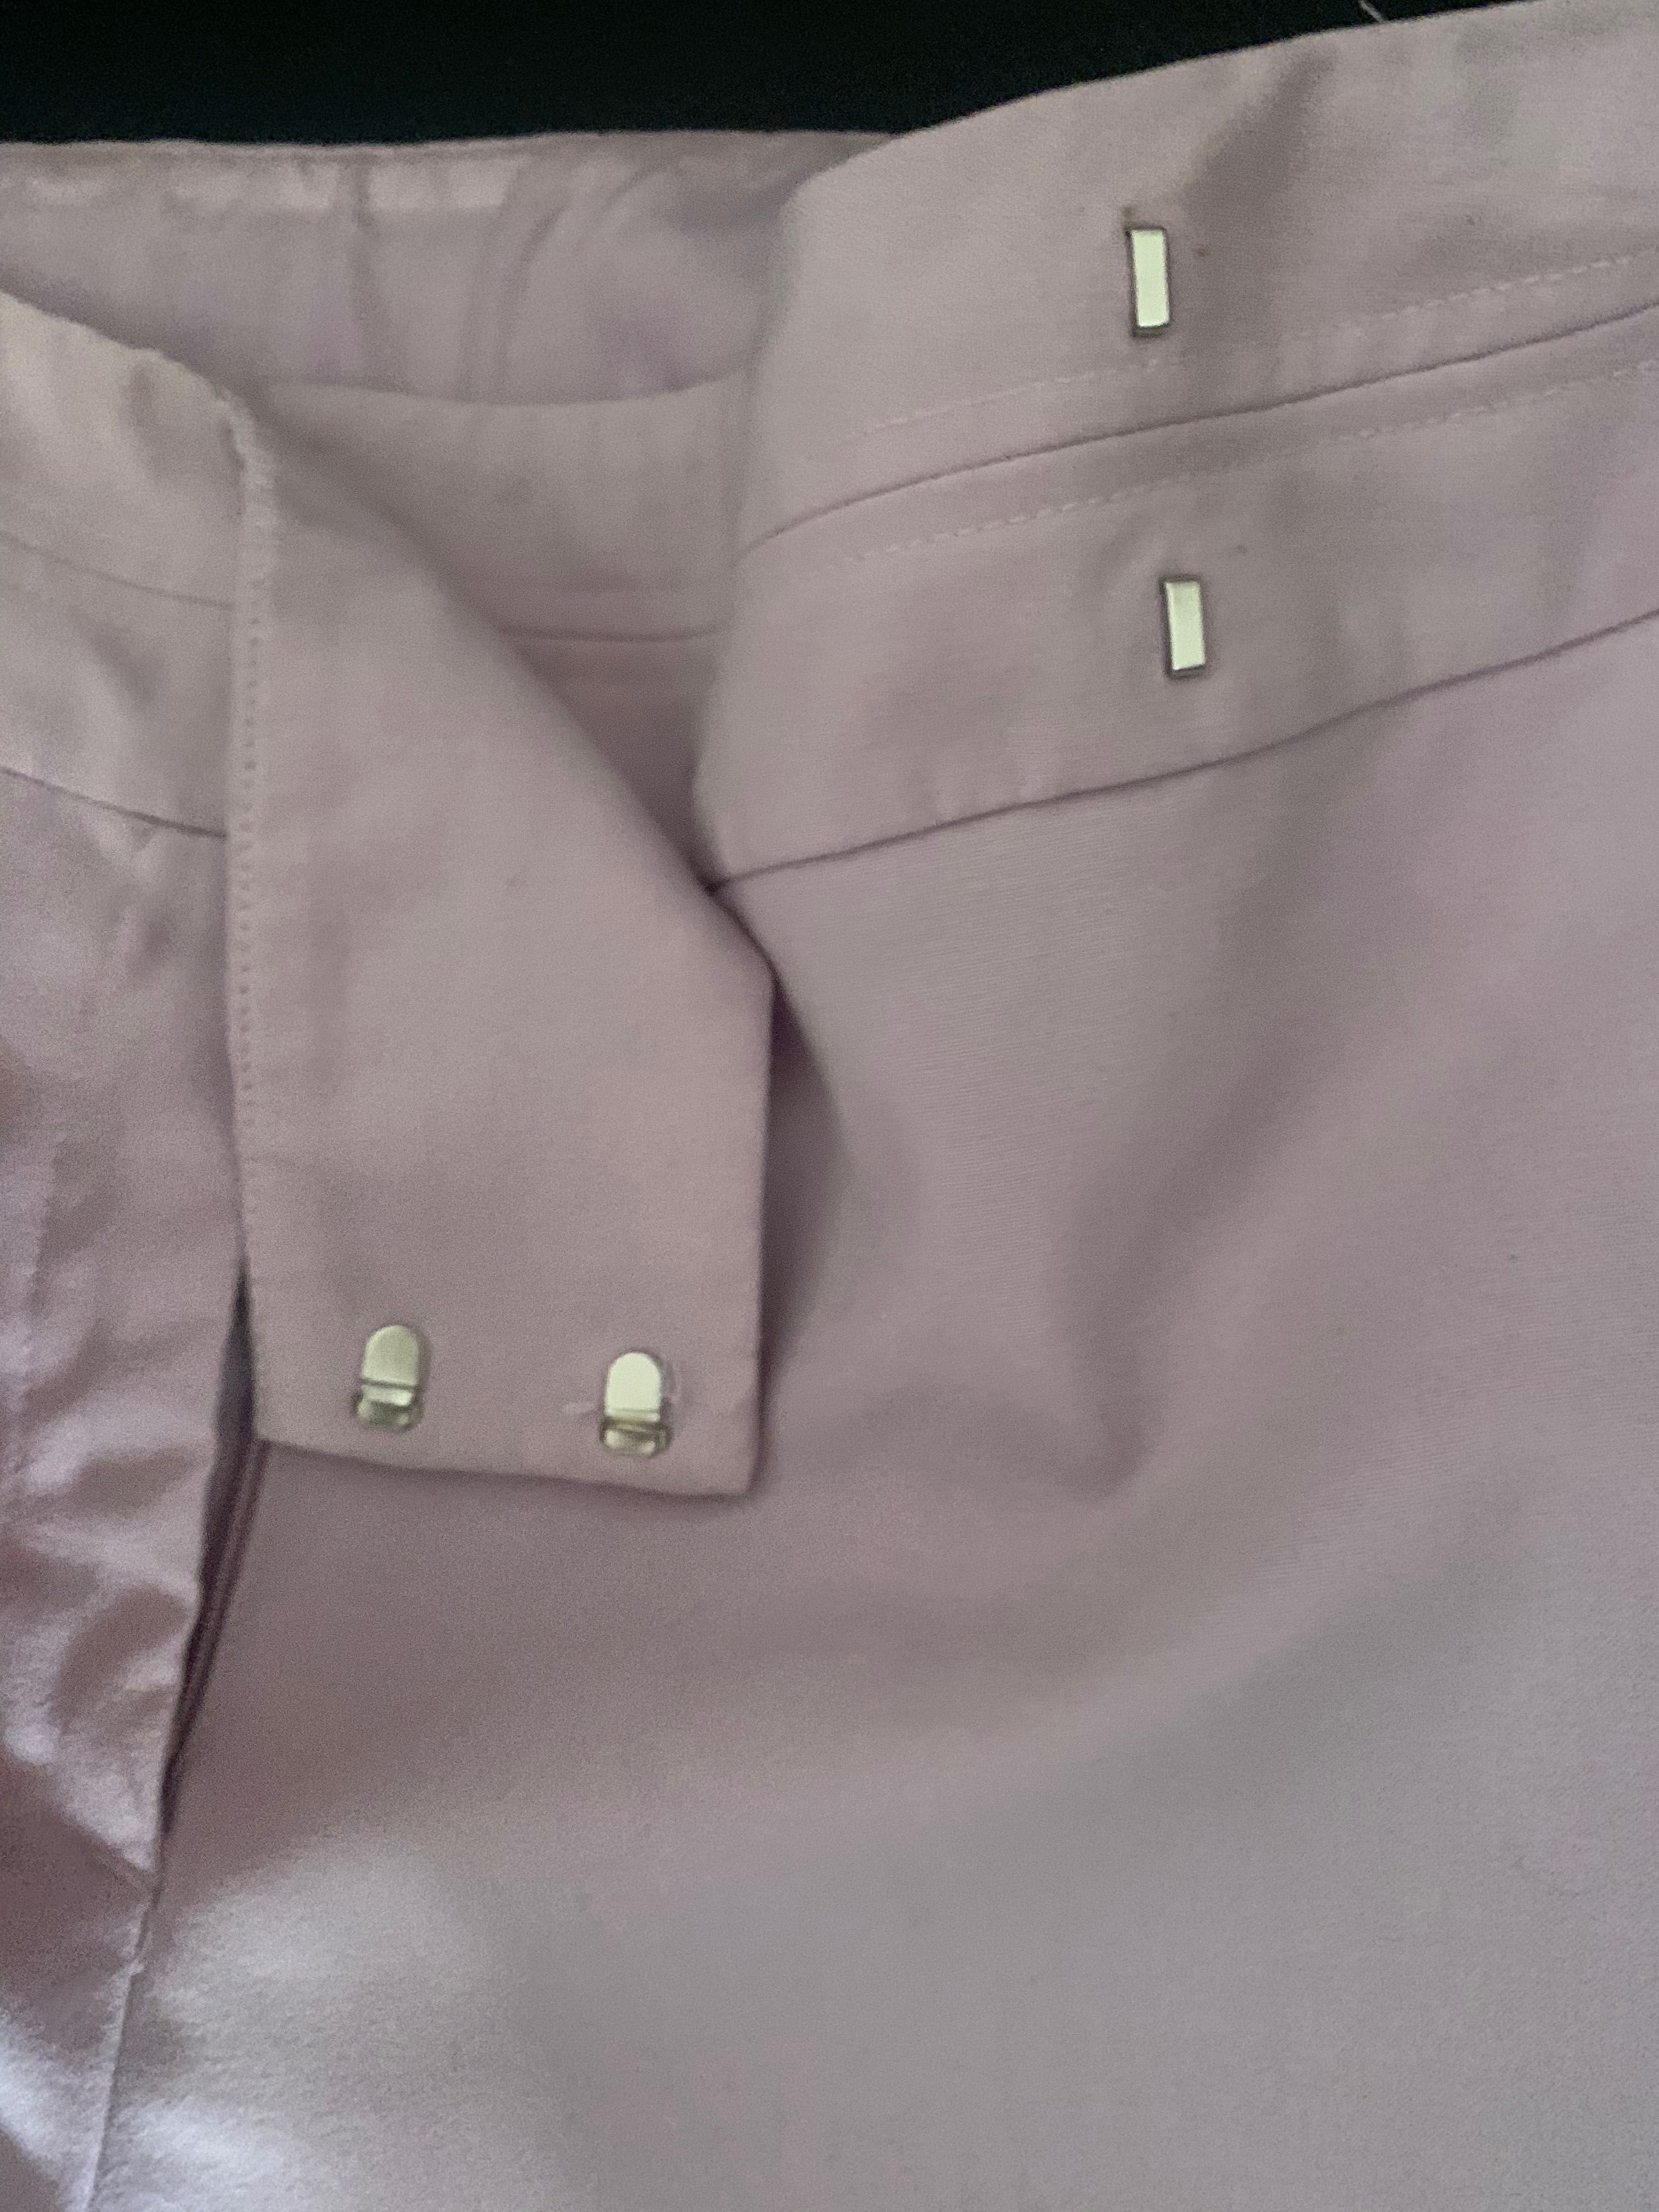 Spodnie 3/4, spodnie culotte lilac